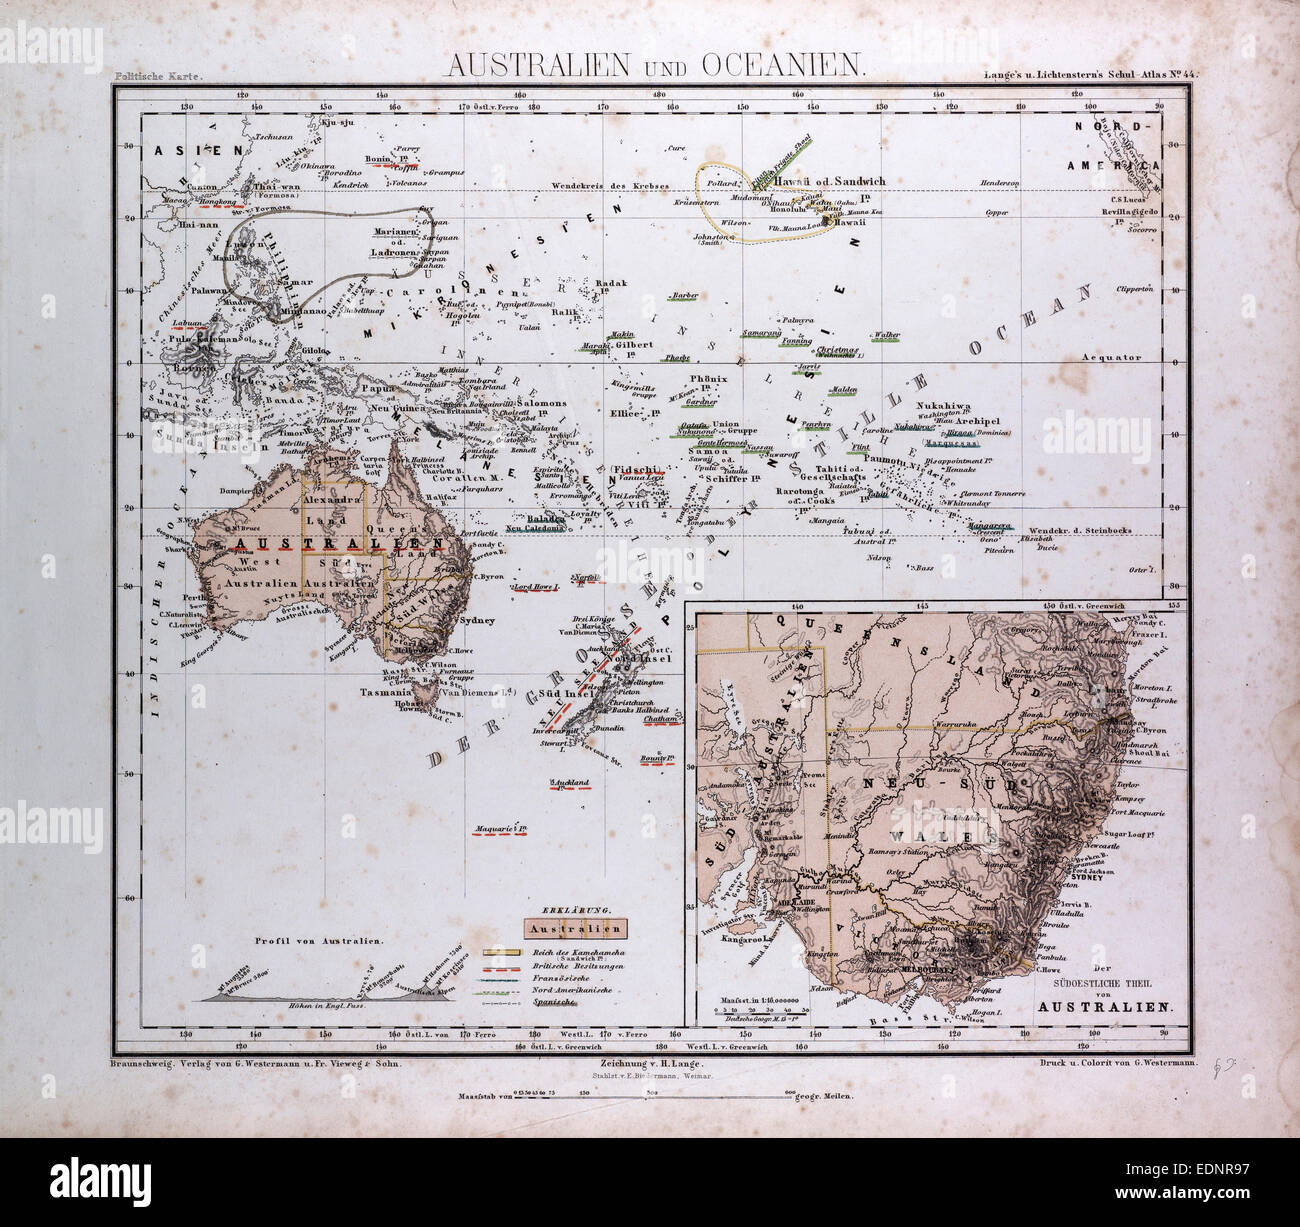 Australien und Ozeanien Karte, Atlas von Th. von Liechtenstern und Henry Lange antike Karte 1869 Stockfoto